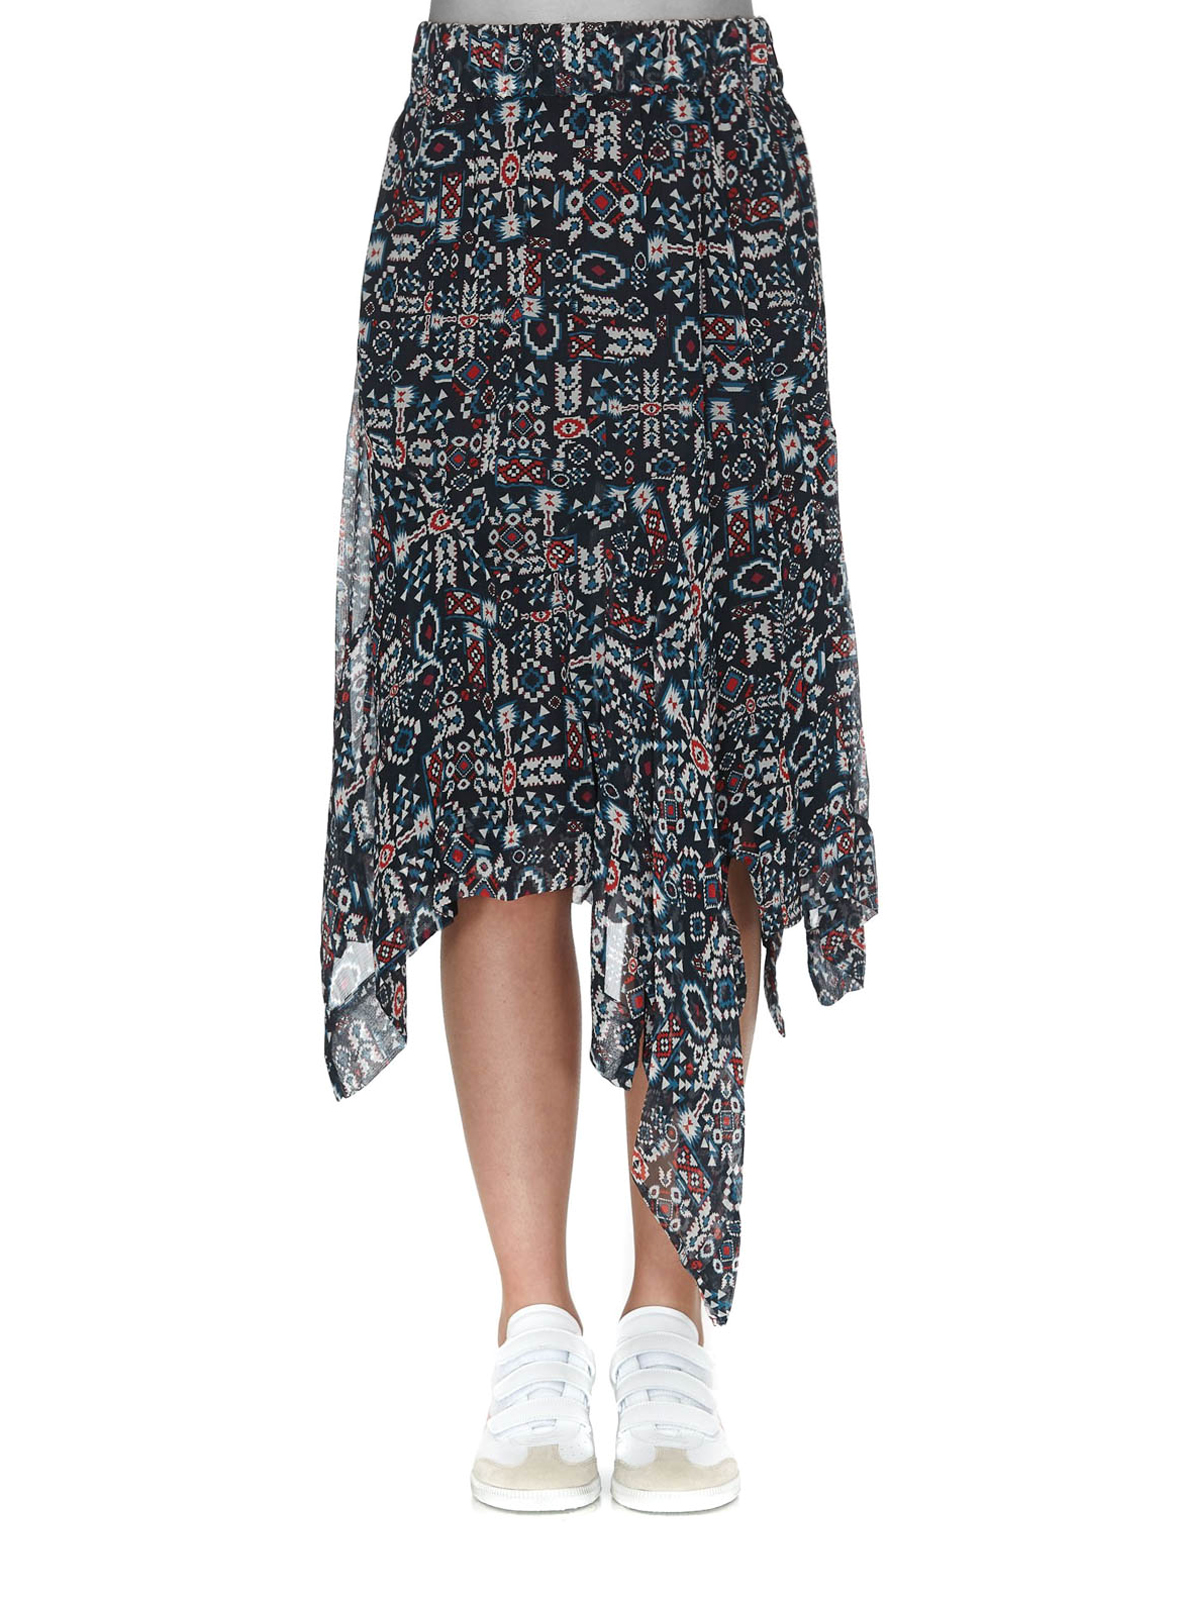 Isabel marant etoile - Geometric pattern silk skirt - Knee length ...